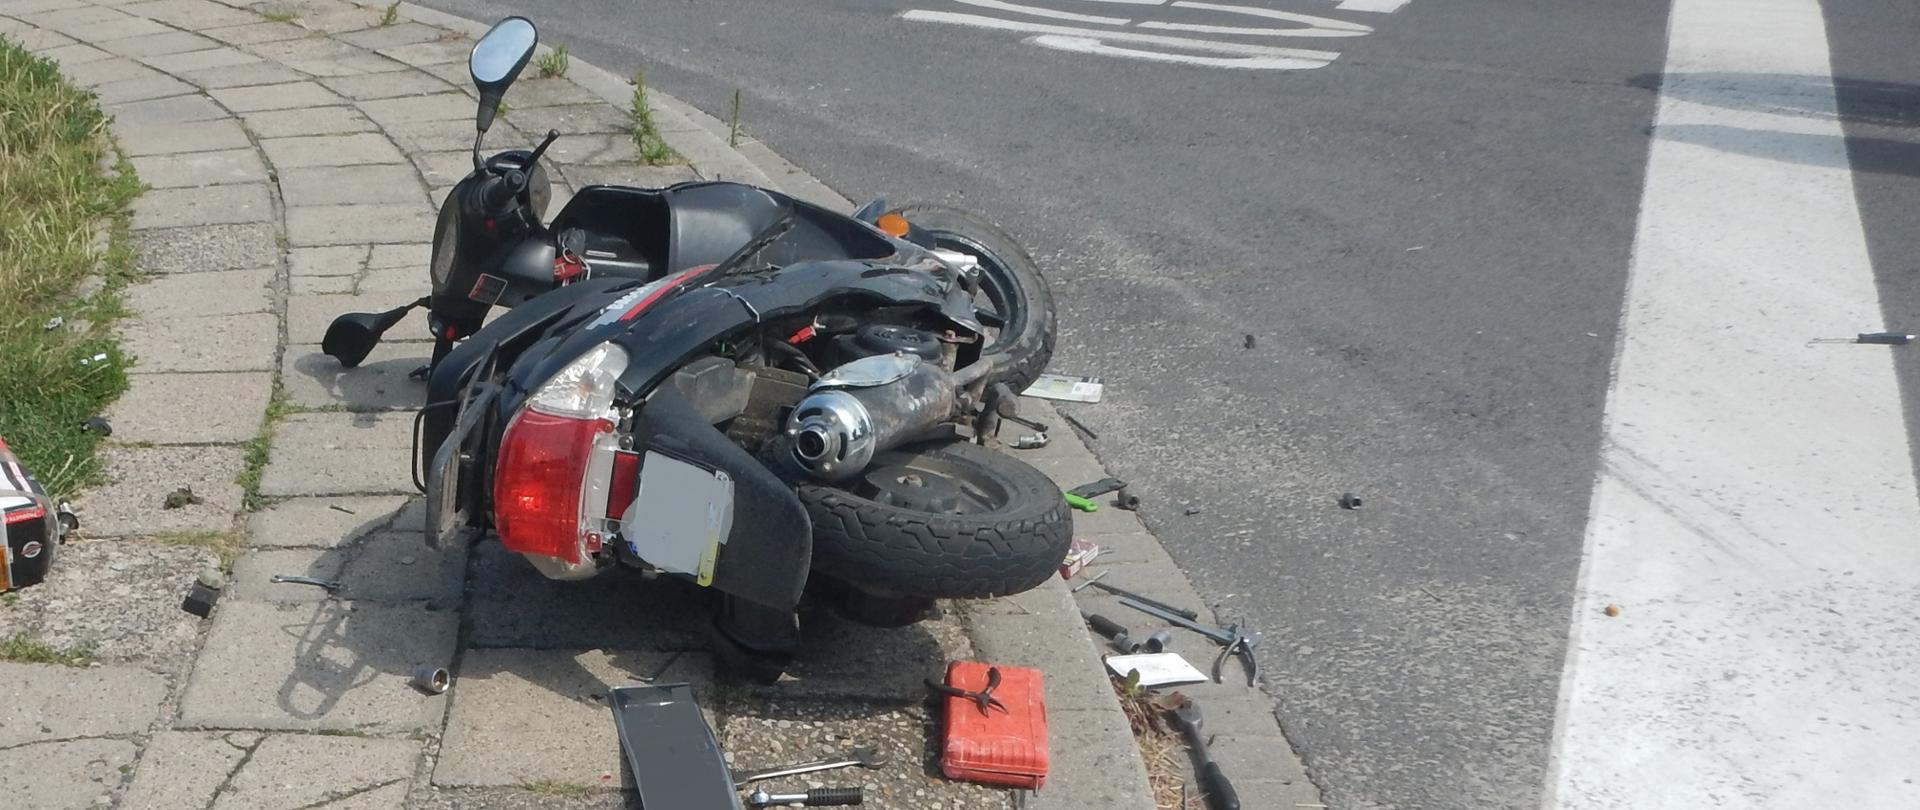 Zdjęcie przedstawia motocykl, który brał udział w zdarzeniu. Motocykl znajduje się na chodniku.